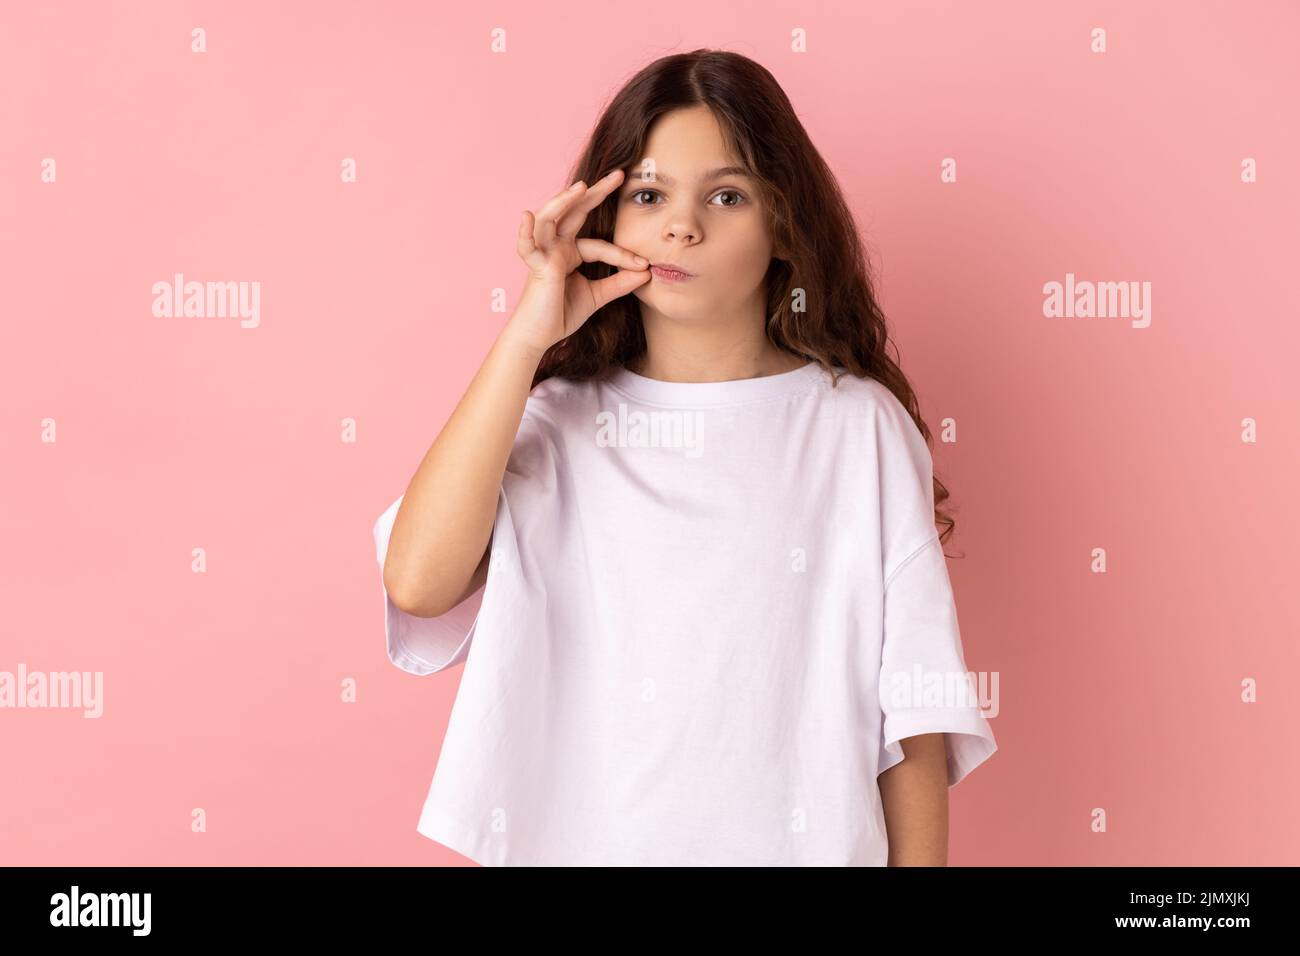 Retrato de una encantadora niña con una camiseta blanca con aspecto misterioso haciendo un gesto de cremallera para cerrar la boca, manteniendo el secreto, rematando los labios. Estudio de interior grabado aislado sobre fondo rosa. Foto de stock